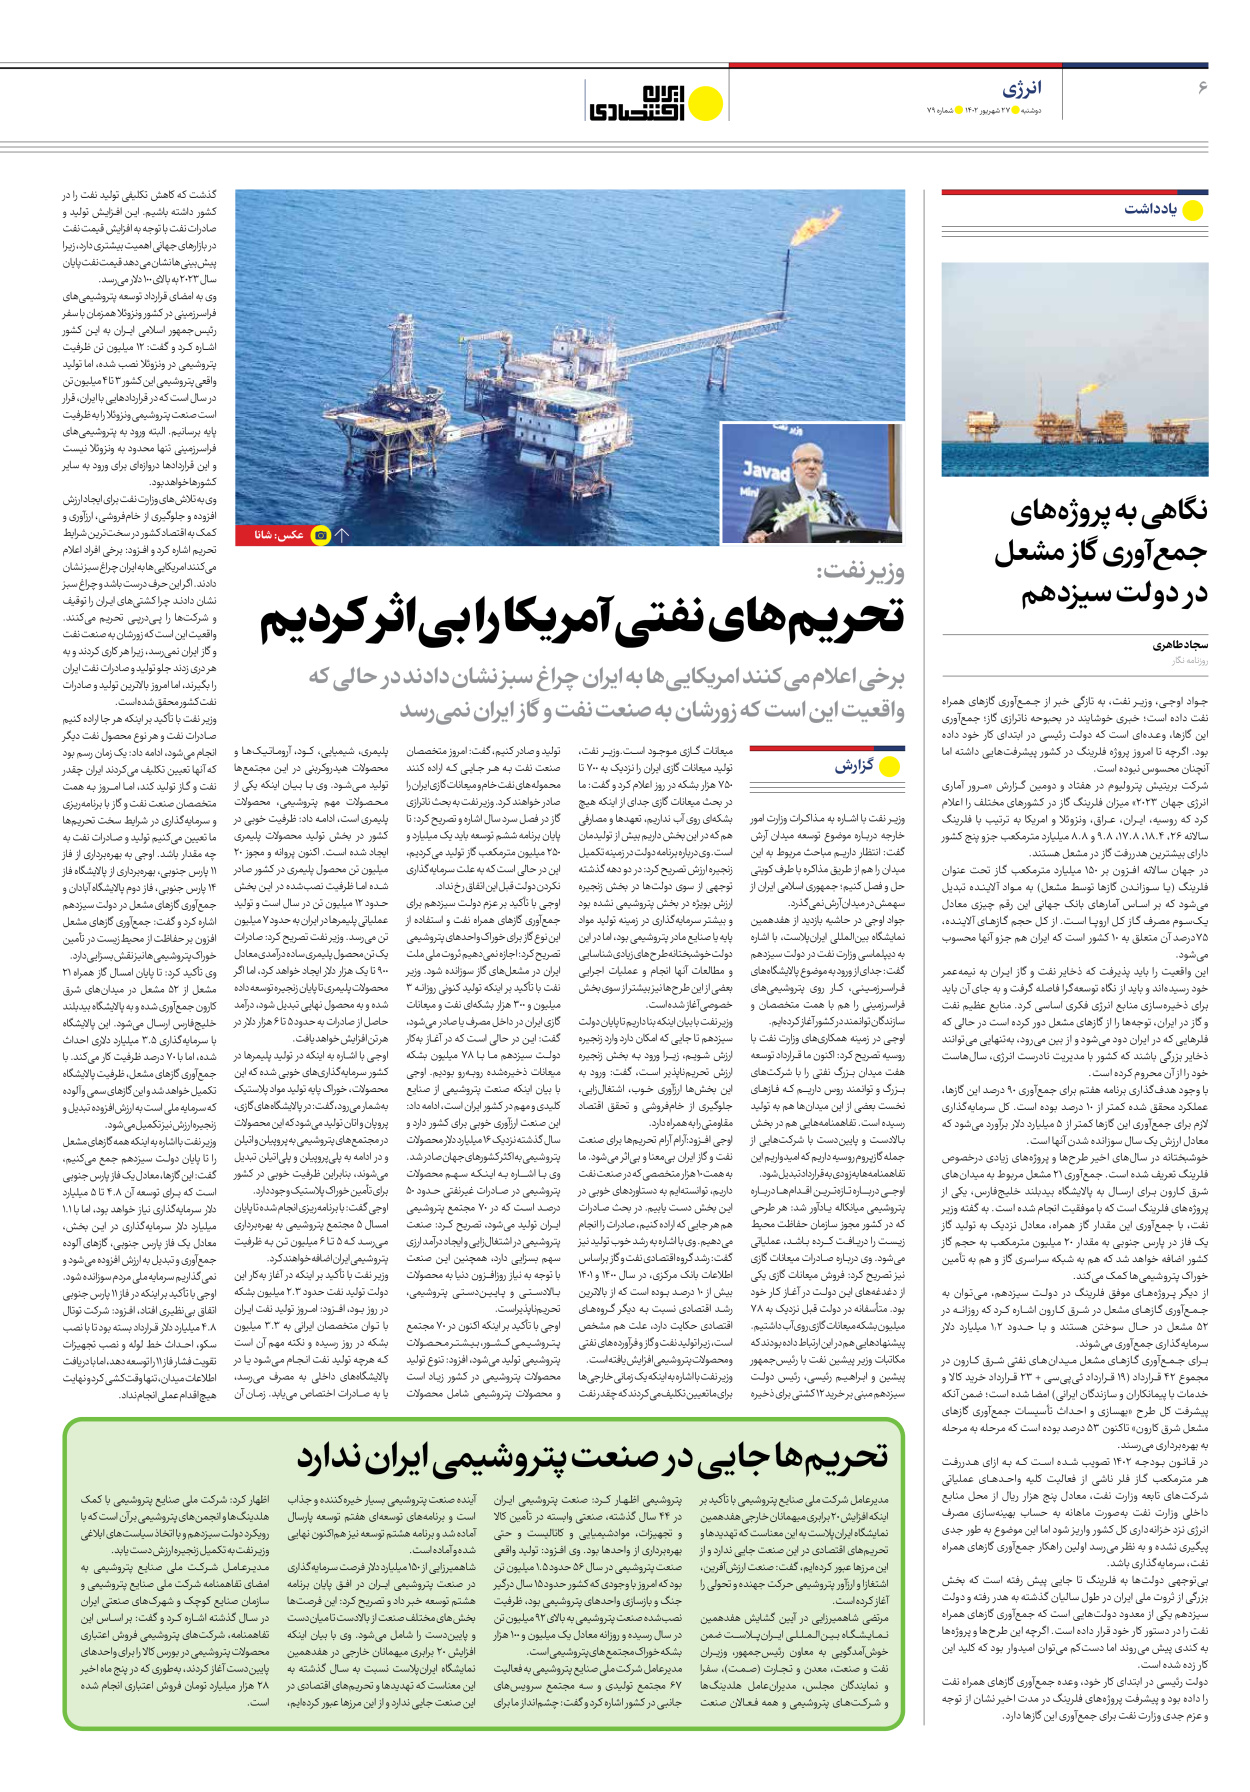 روزنامه ایران اقتصادی - شماره هفتاد و نه - ۲۷ شهریور ۱۴۰۲ - صفحه ۶